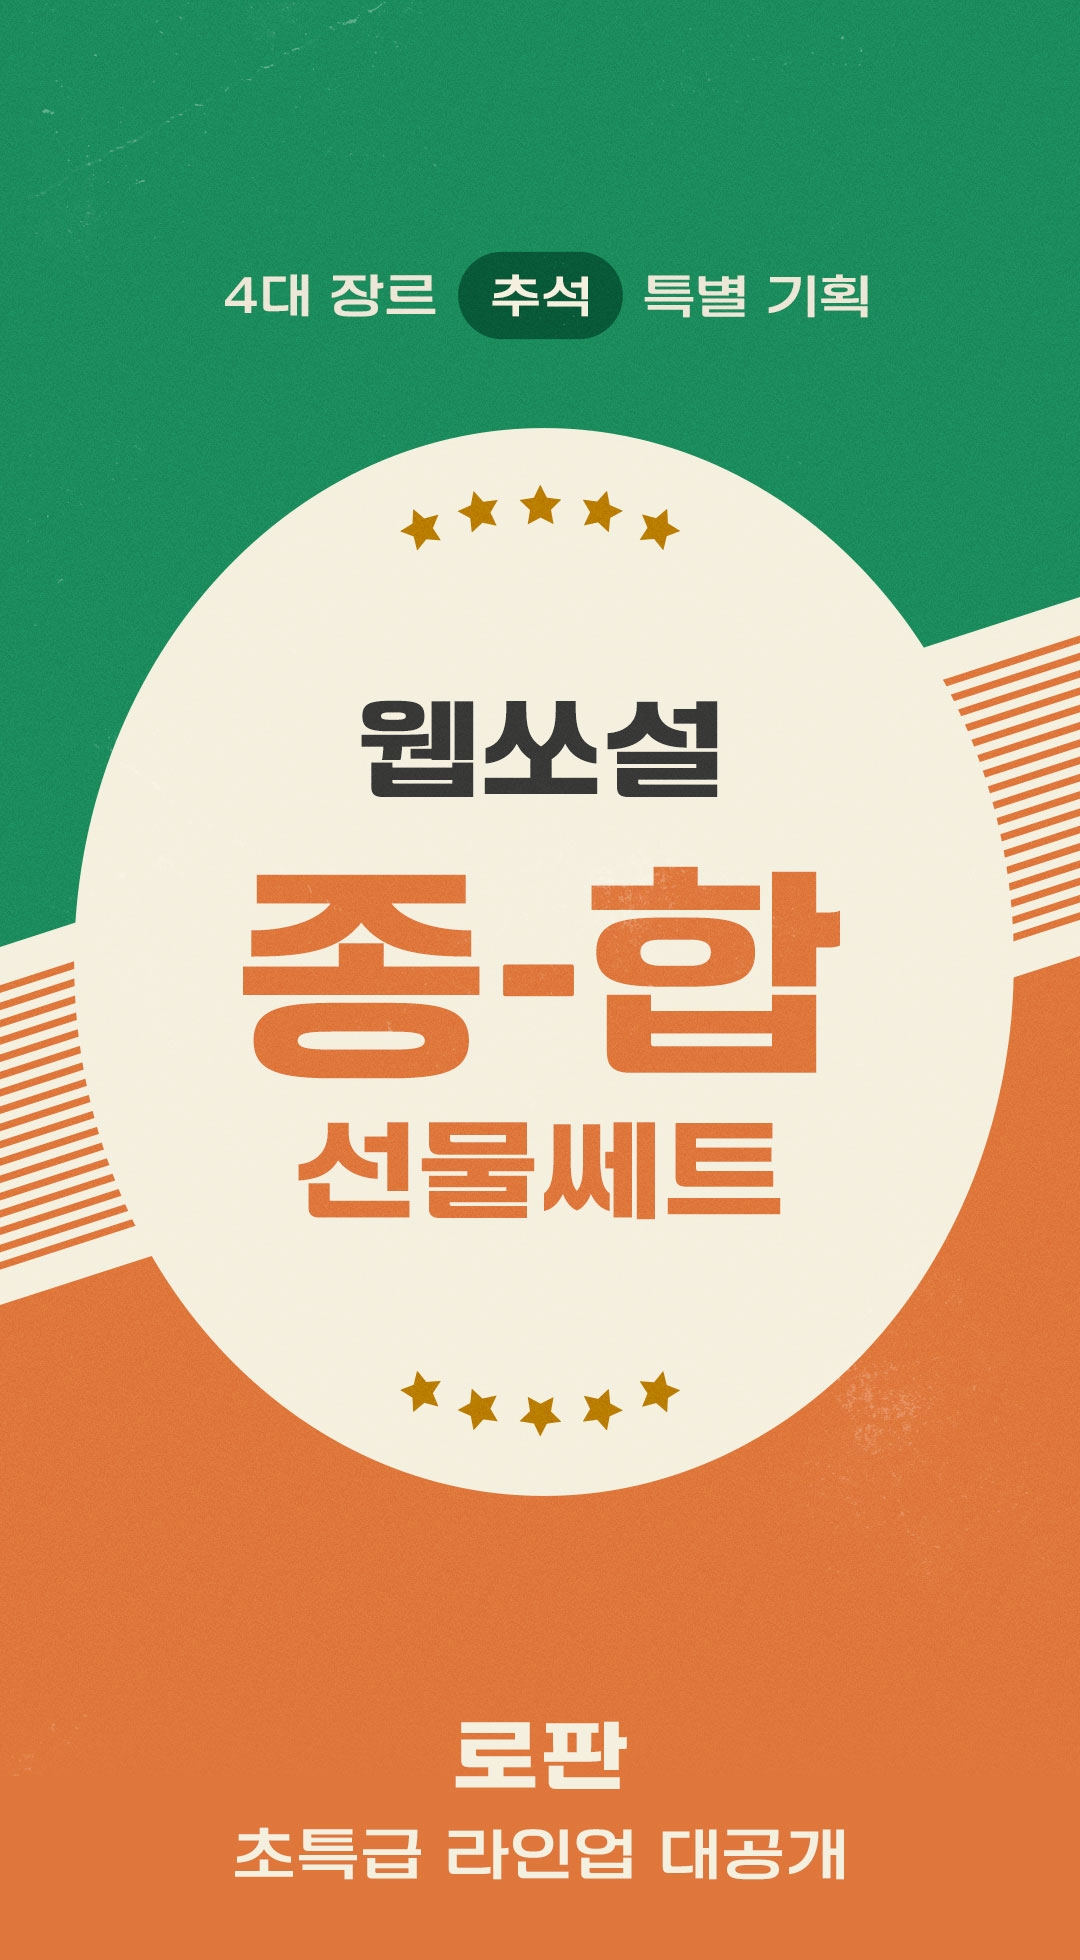 로판] 웹쏘설 종합 선물 쎄트 추석 특별 라인업 공개 - 리디